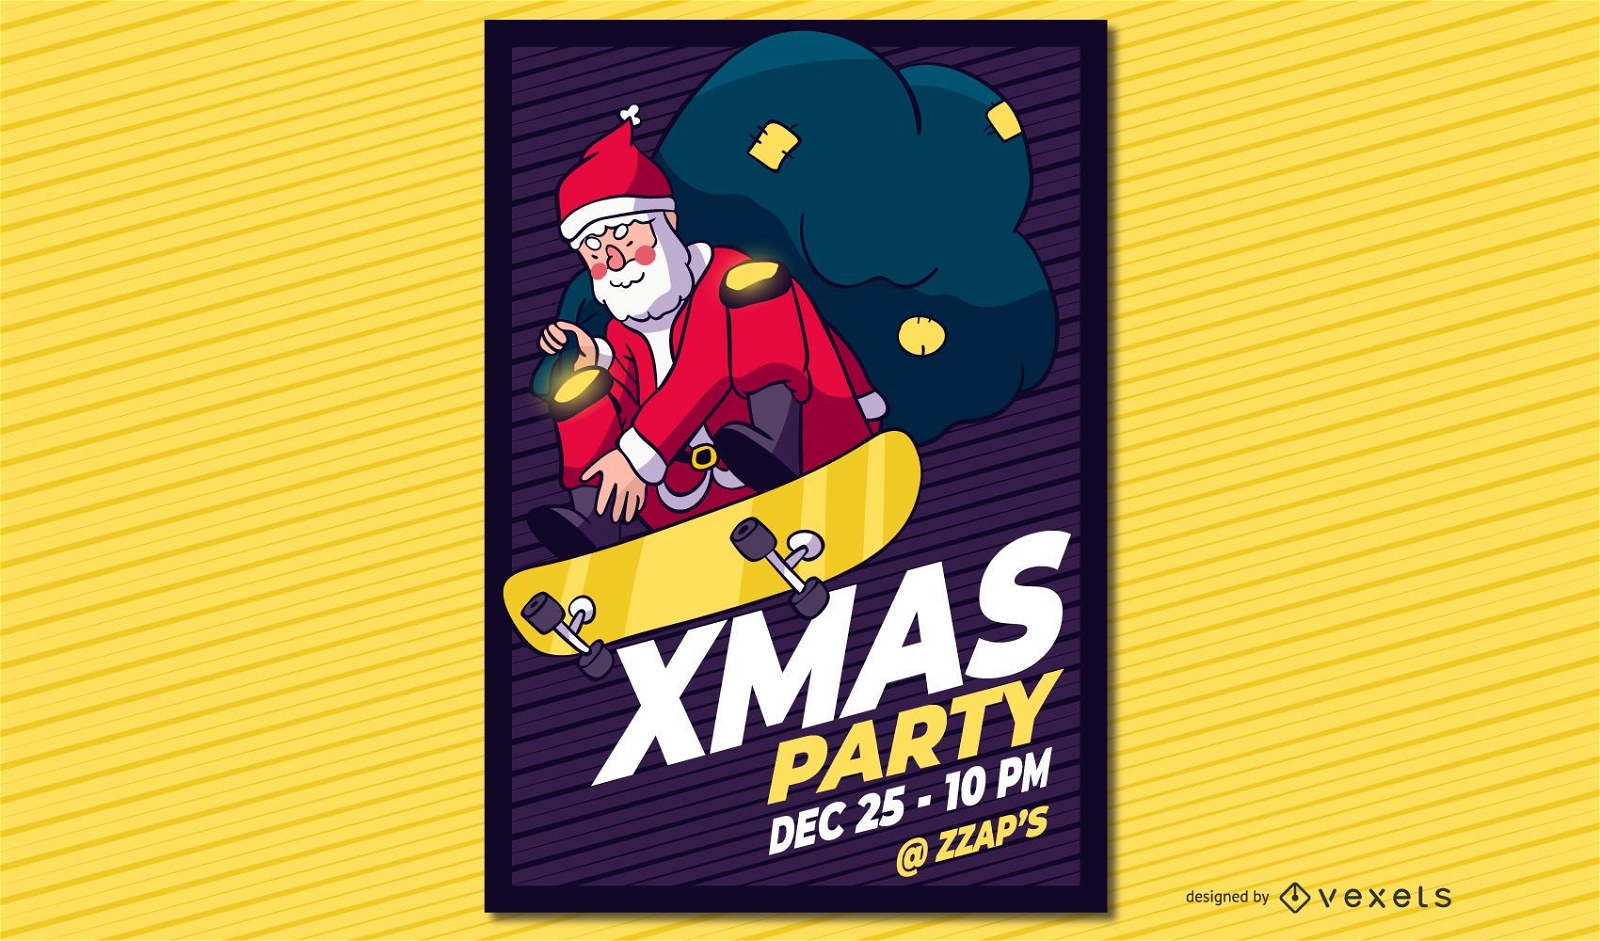 Xmas party santa poster